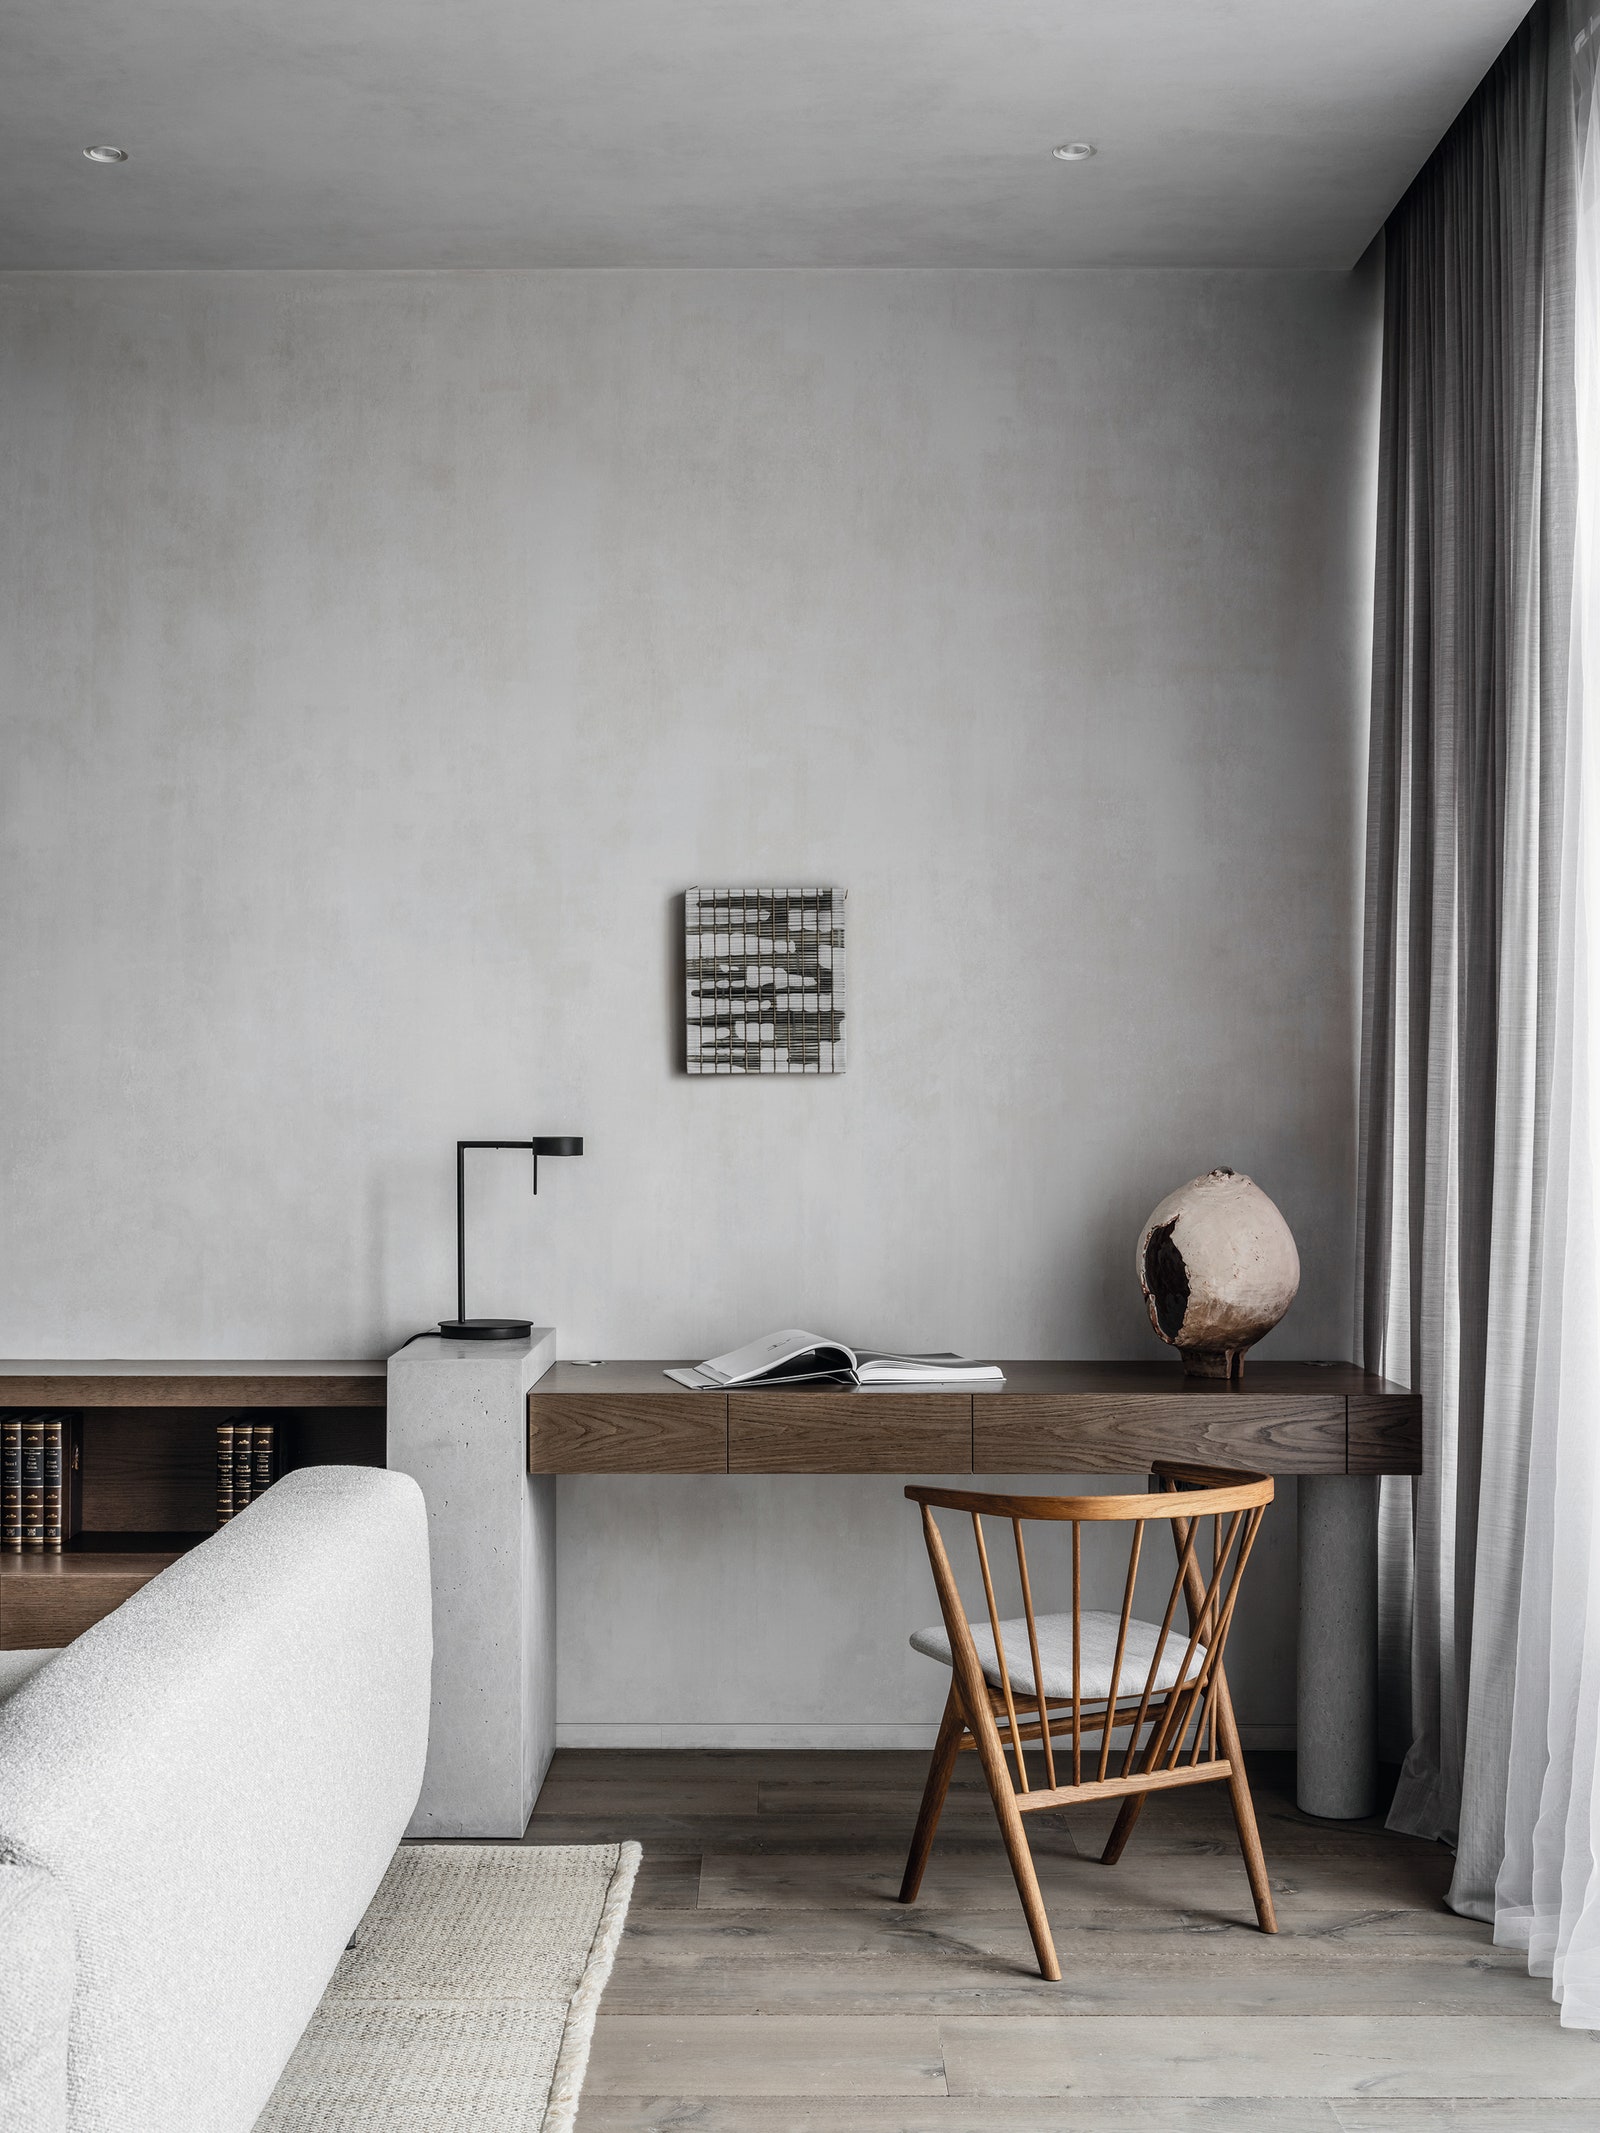 Рабочее место в гостиной. Консоль и письменный стол сделаны по проекту “Артбюро 11” стул Sibast настольная лампа Sollos...